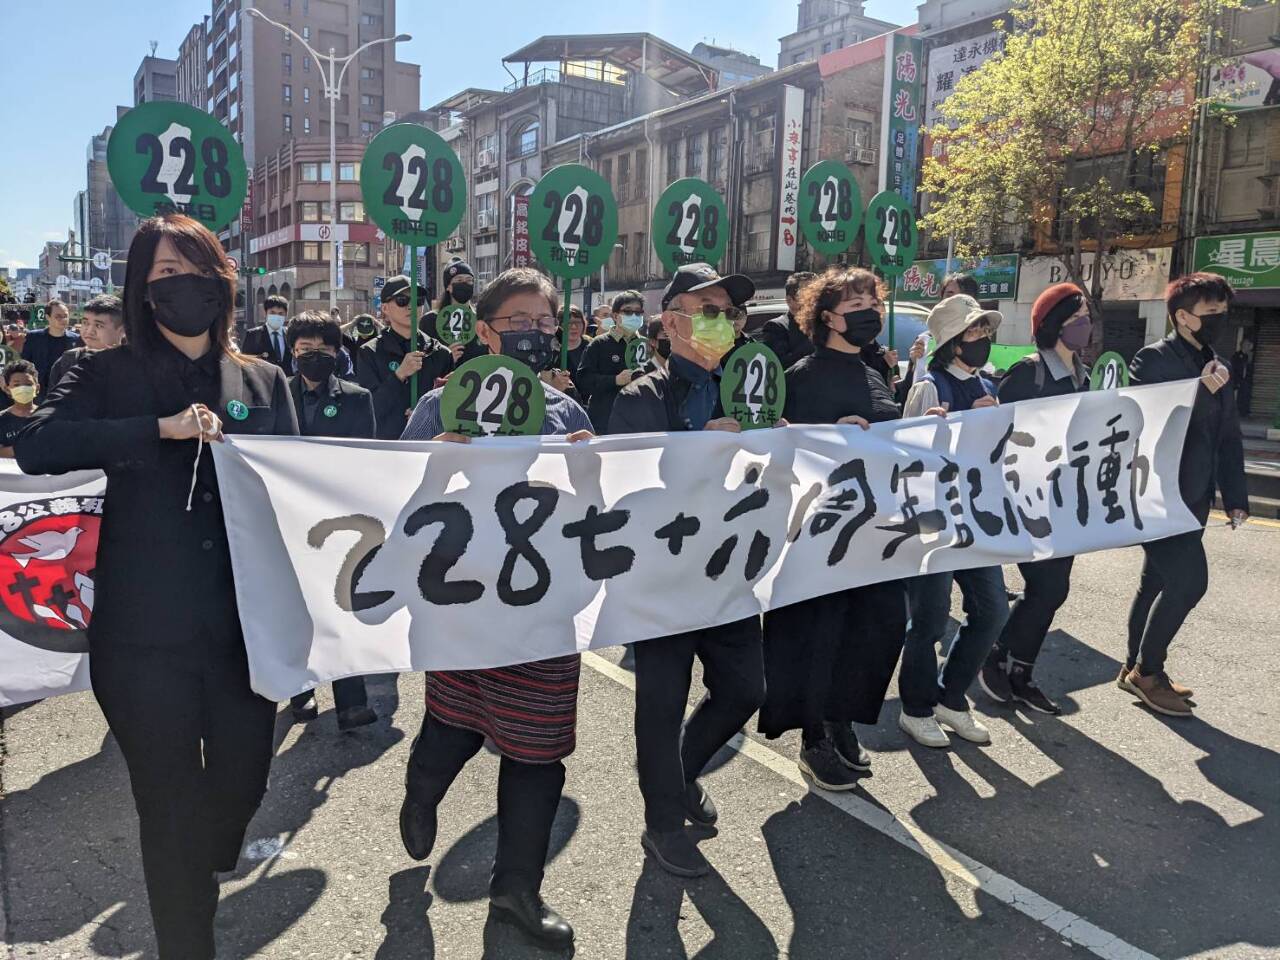 二二八76週年紀念遊行 盼台灣社會全心面對別怕爭議